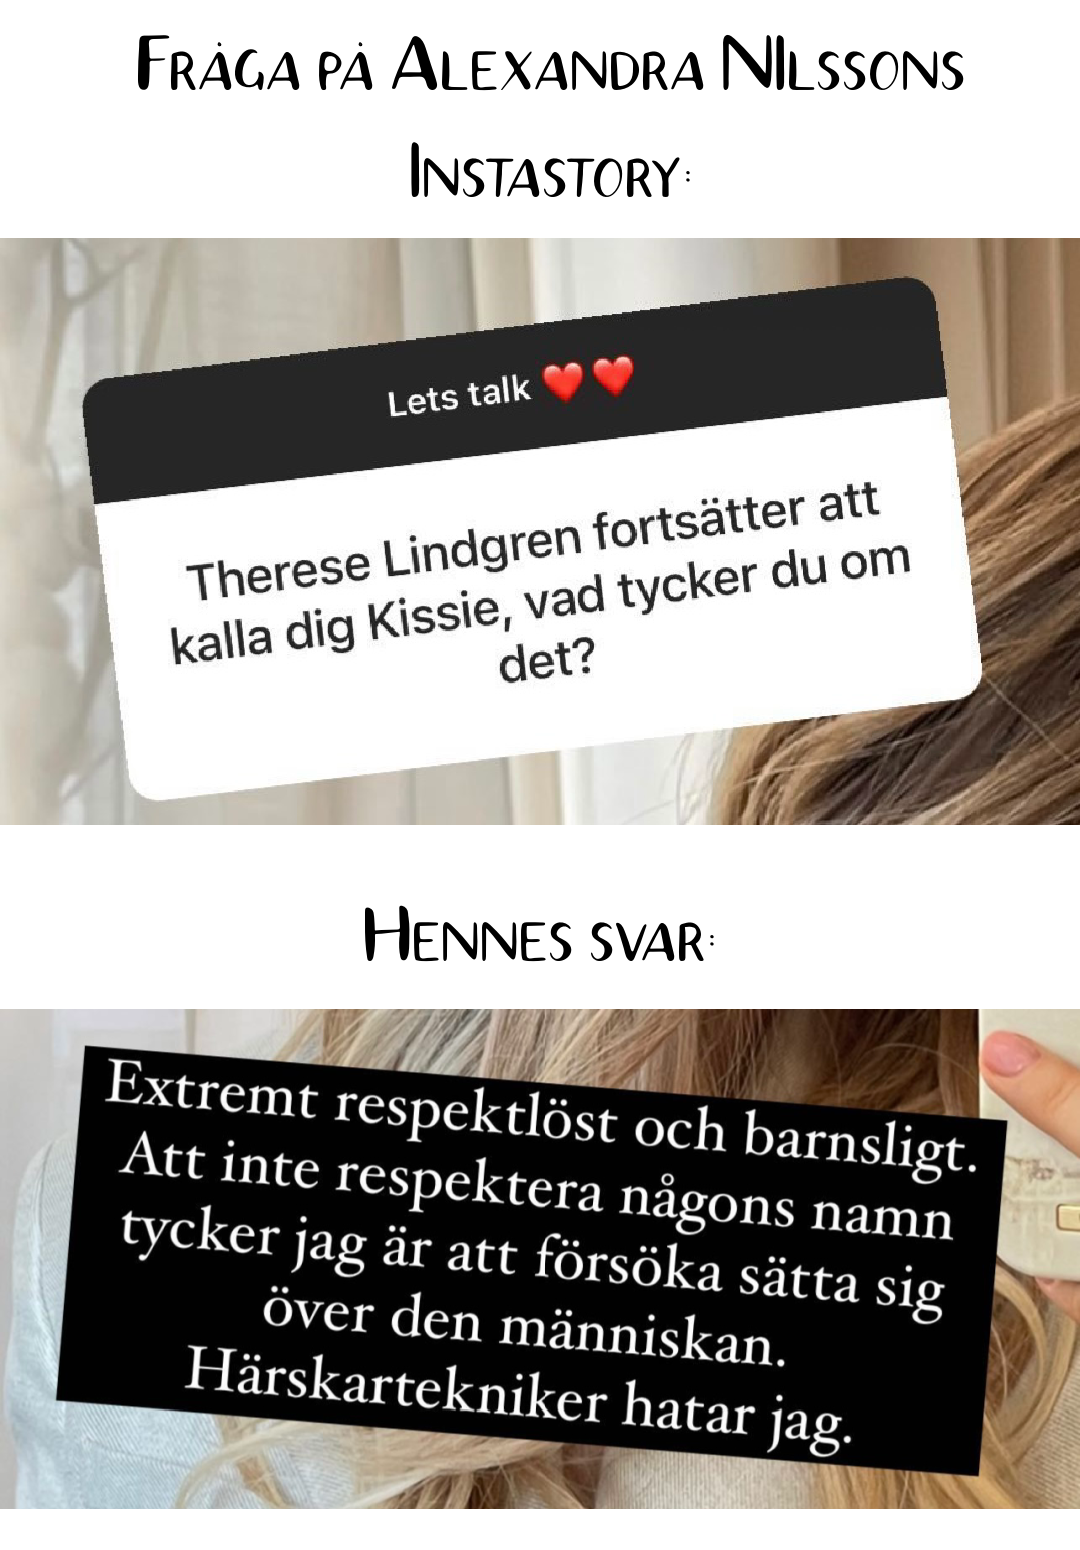 Frågan från Alexnadra NIlssons Instastory: Therese Lindgren fortsätter att kalla dig för "Kissie". Vad tycker du om det? Svar: Extremt respektlöst och barnsligt. Att inte respektera någons namn är att försöka sätta sig över den människan. Härskartekniker hatar jag.